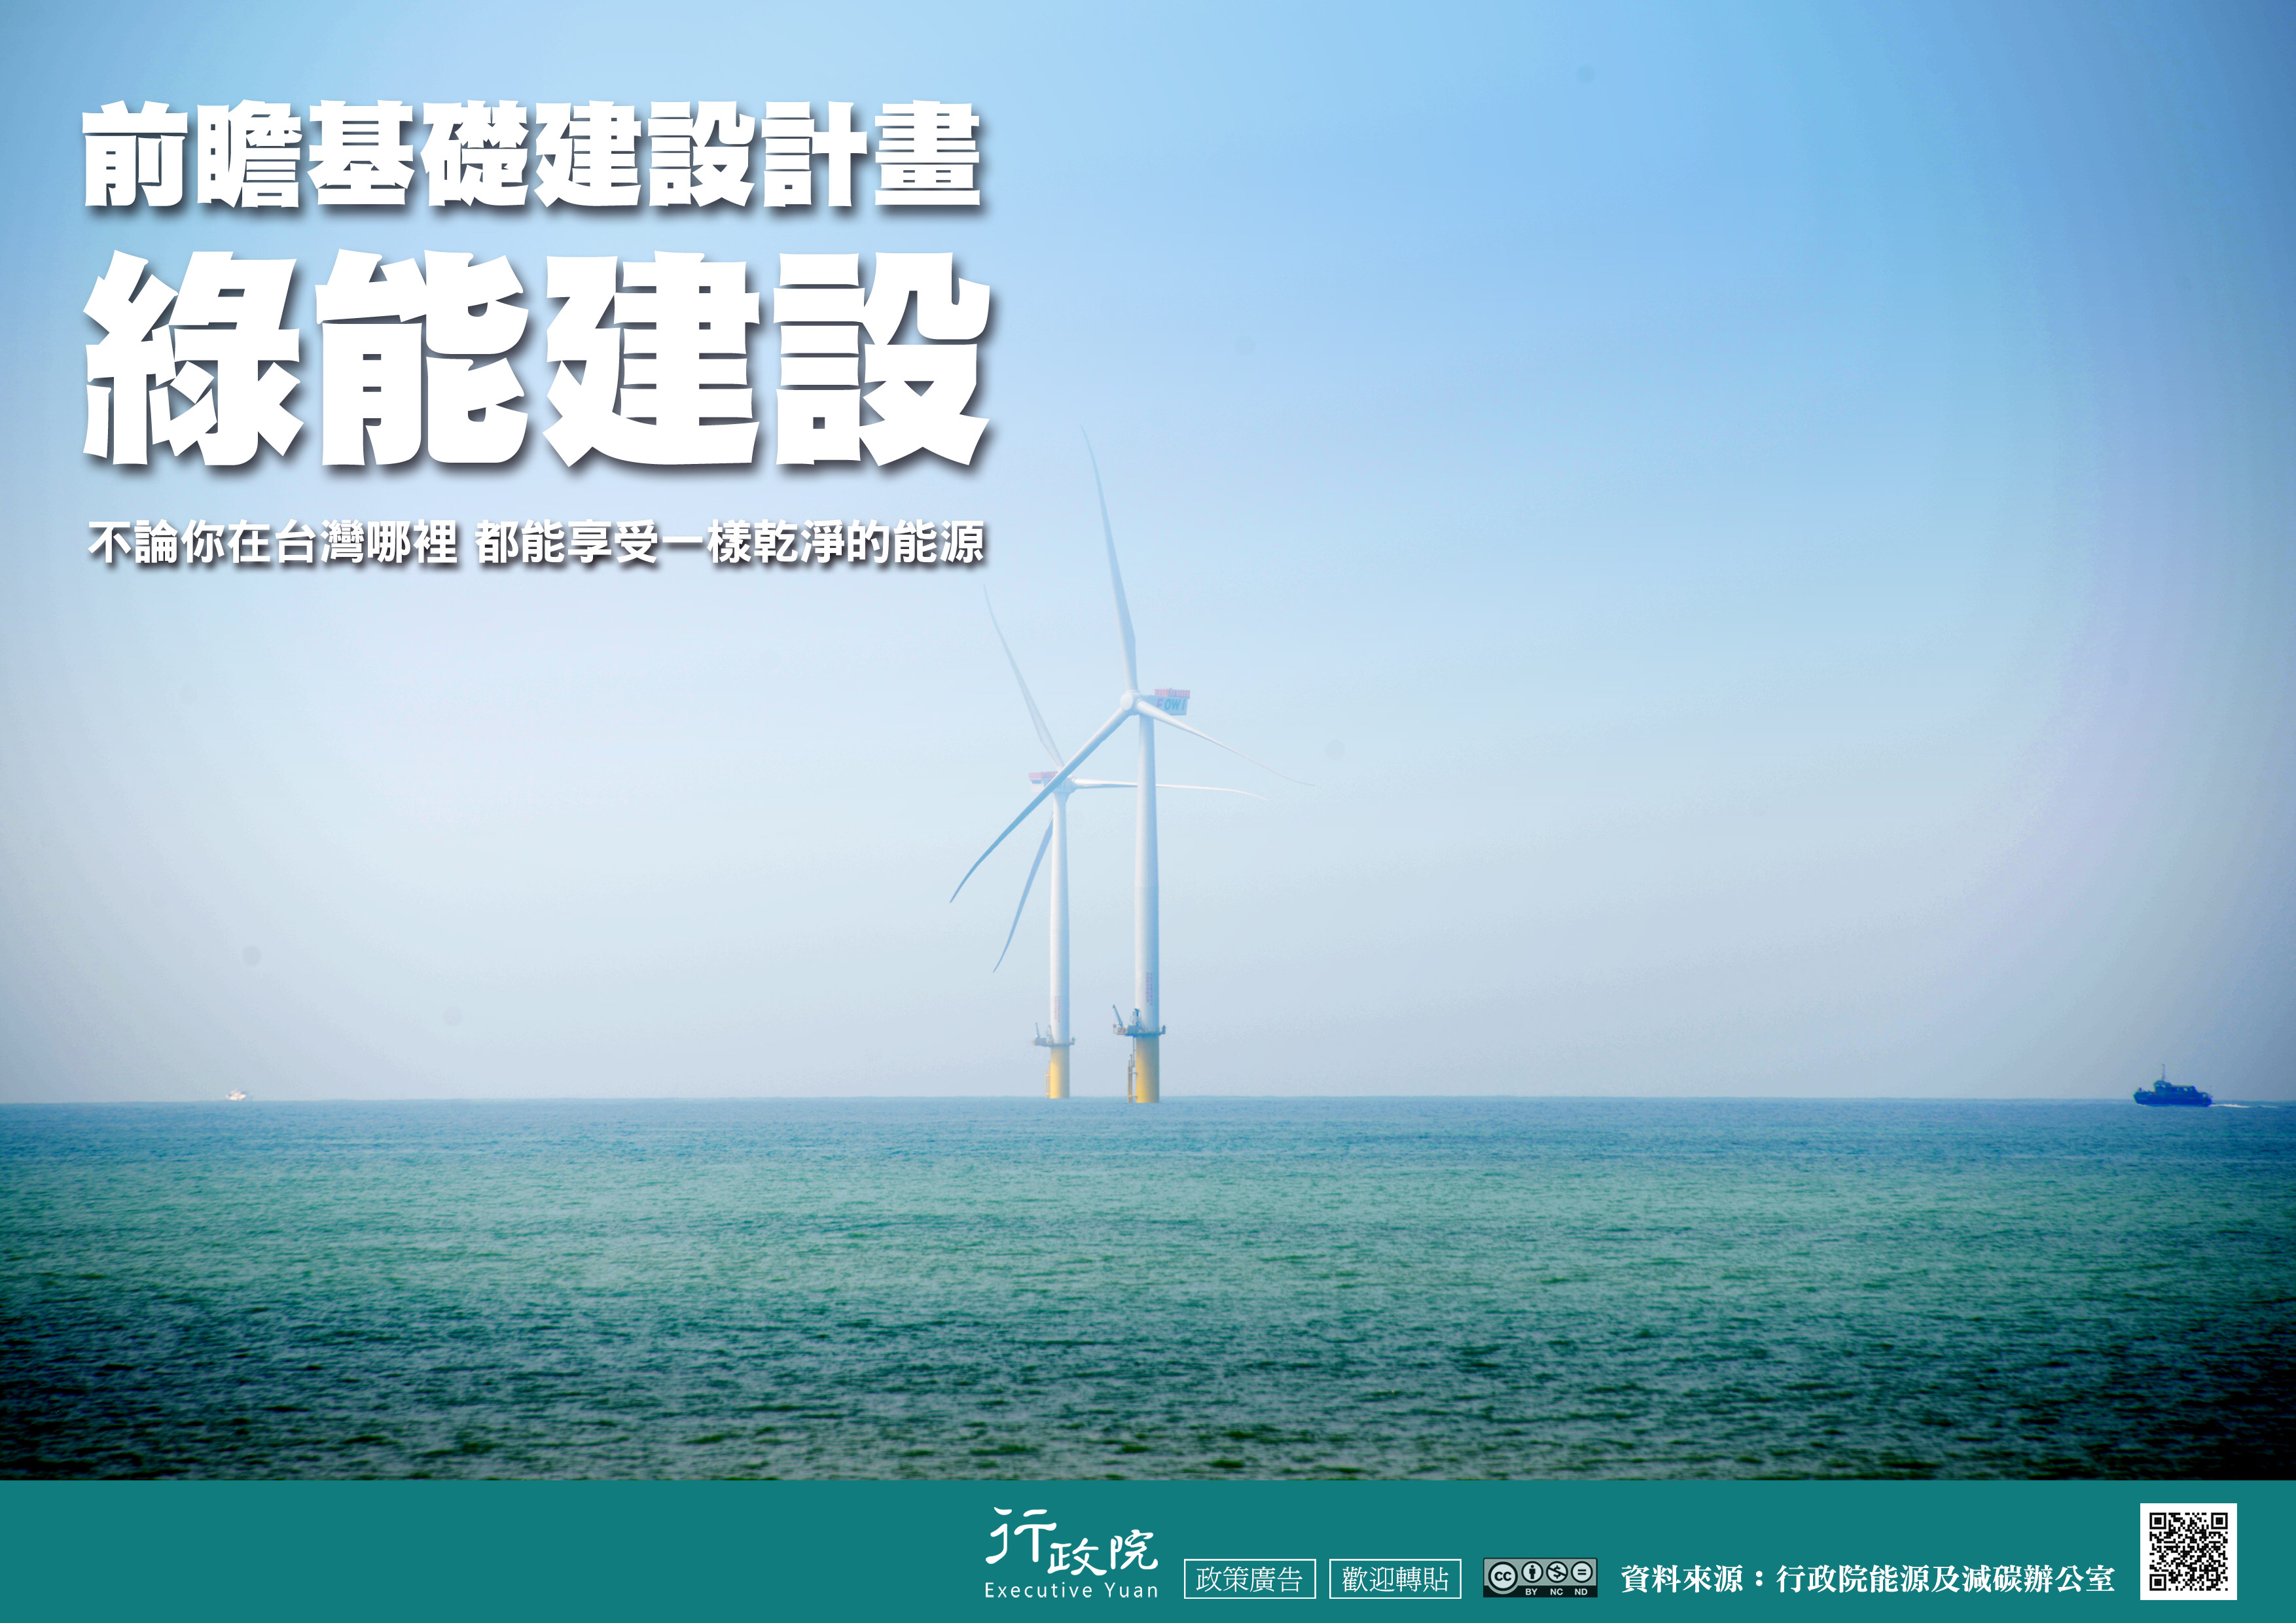 不管你在台灣哪裡 都能享受一樣乾淨的能源